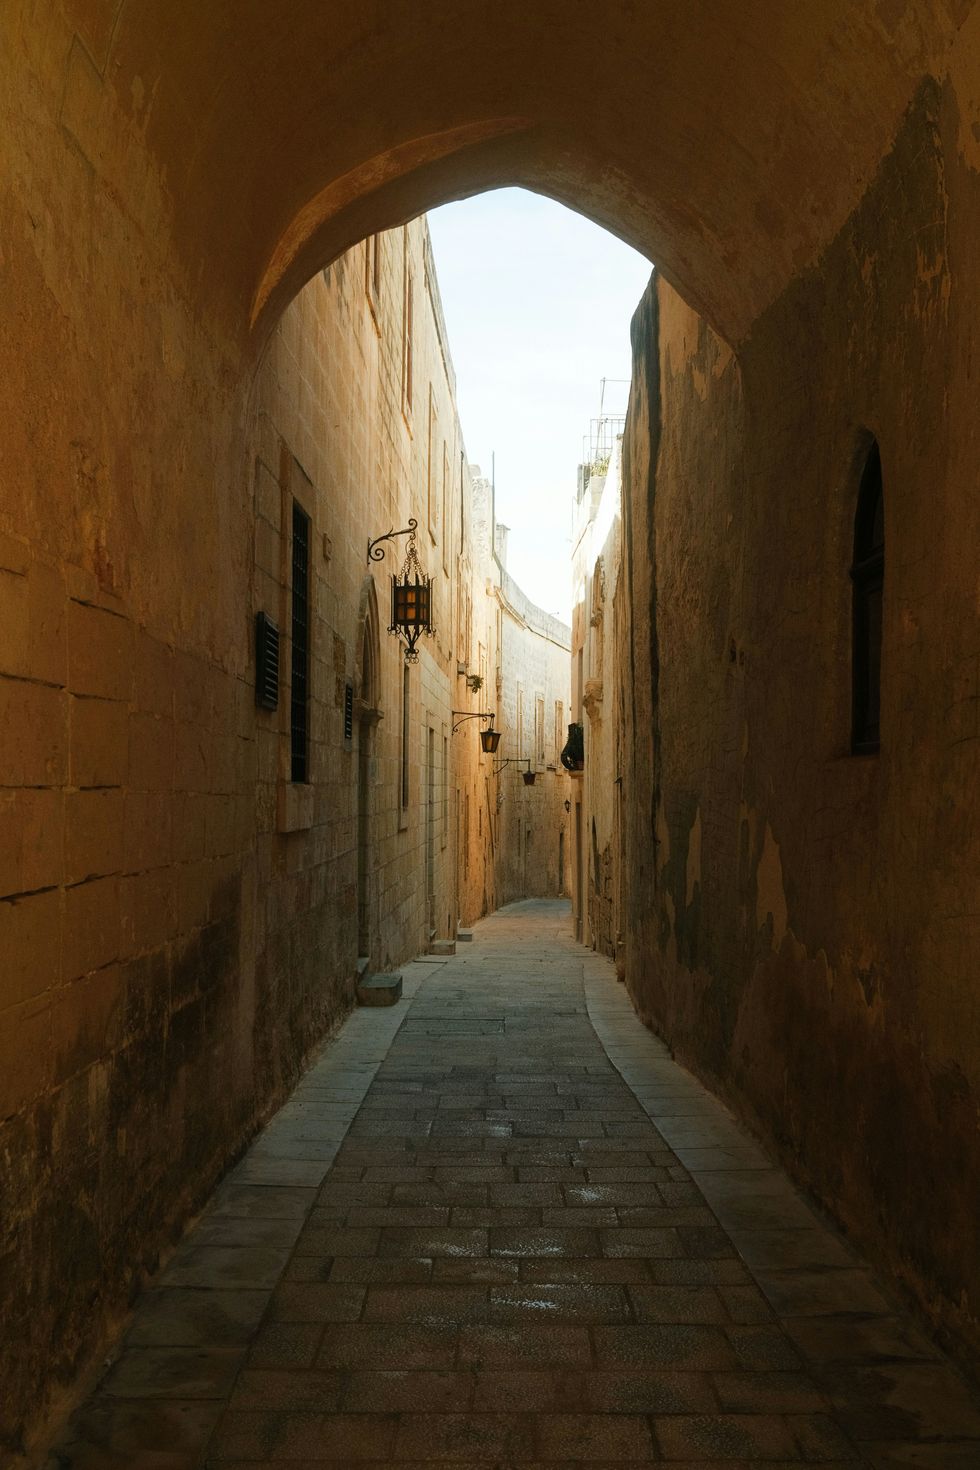 a narrow alley way